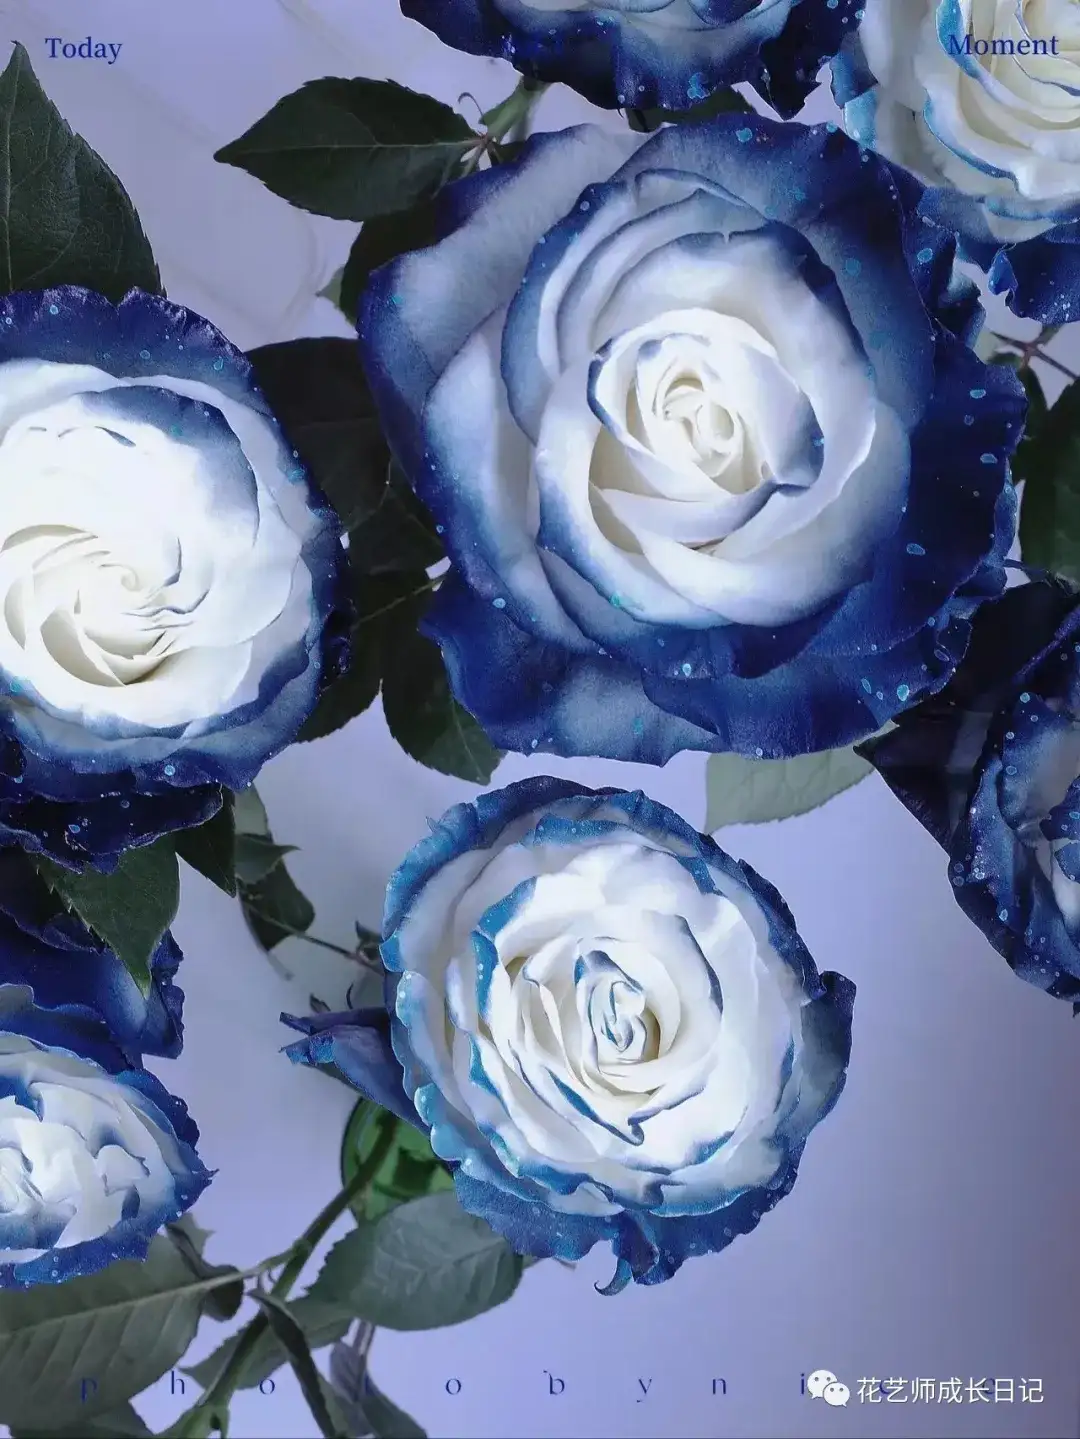 100朵玫瑰vol.56 | 厄瓜多尔银河玫瑰milky way，在浪漫宇宙中盛放的蓝玫瑰！ - 知乎